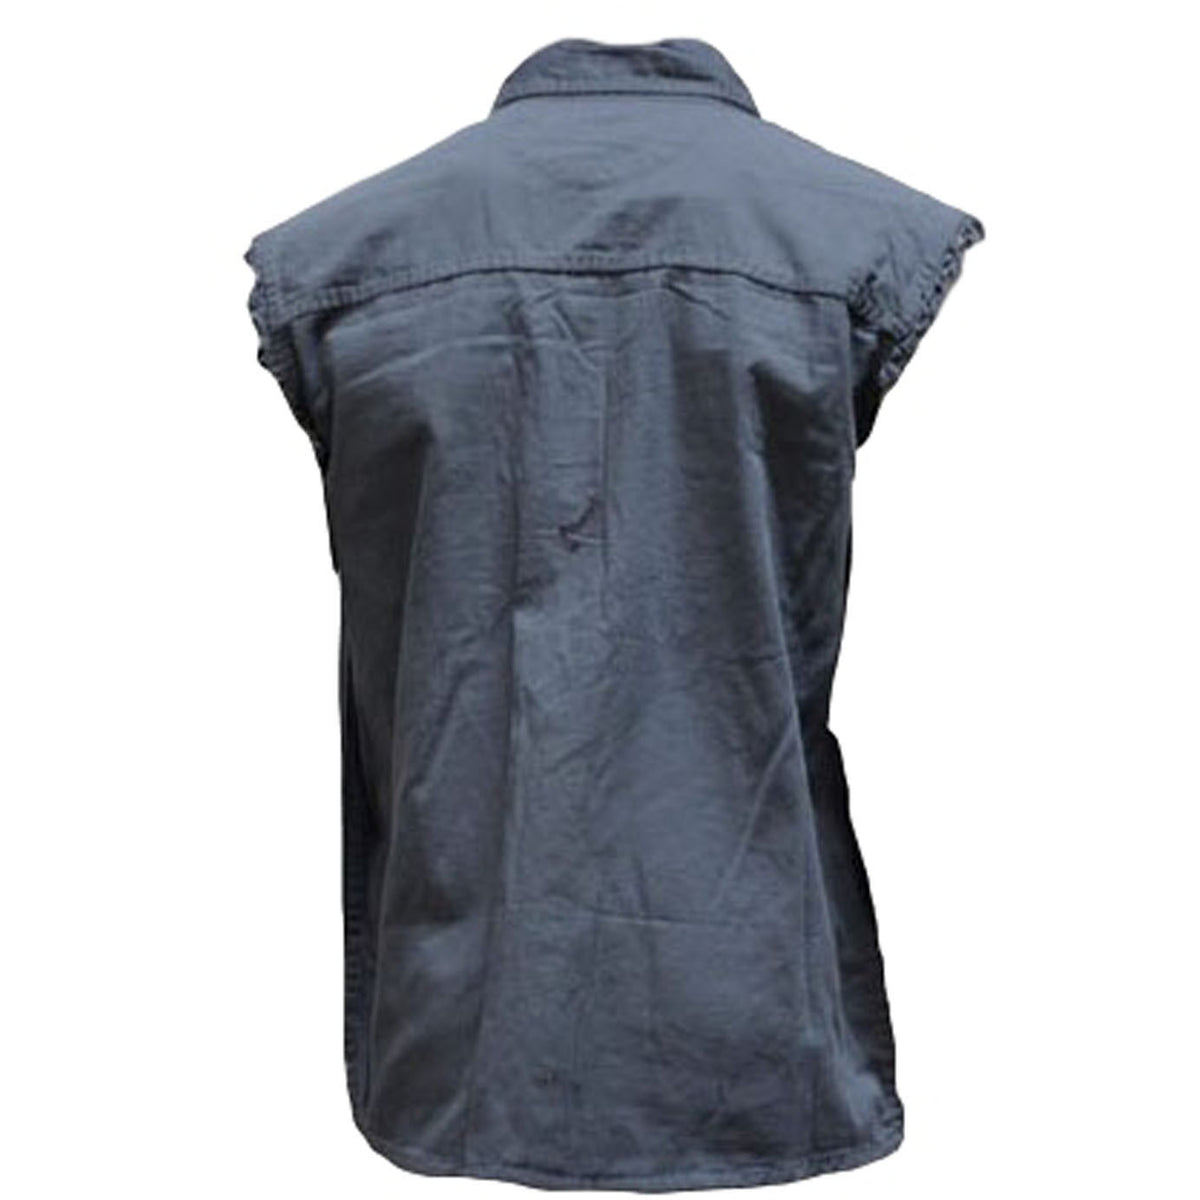 Mens Motorcycle Biker Shirt Ash Blue Cut Off Sleeveless Shirt Size Medium only